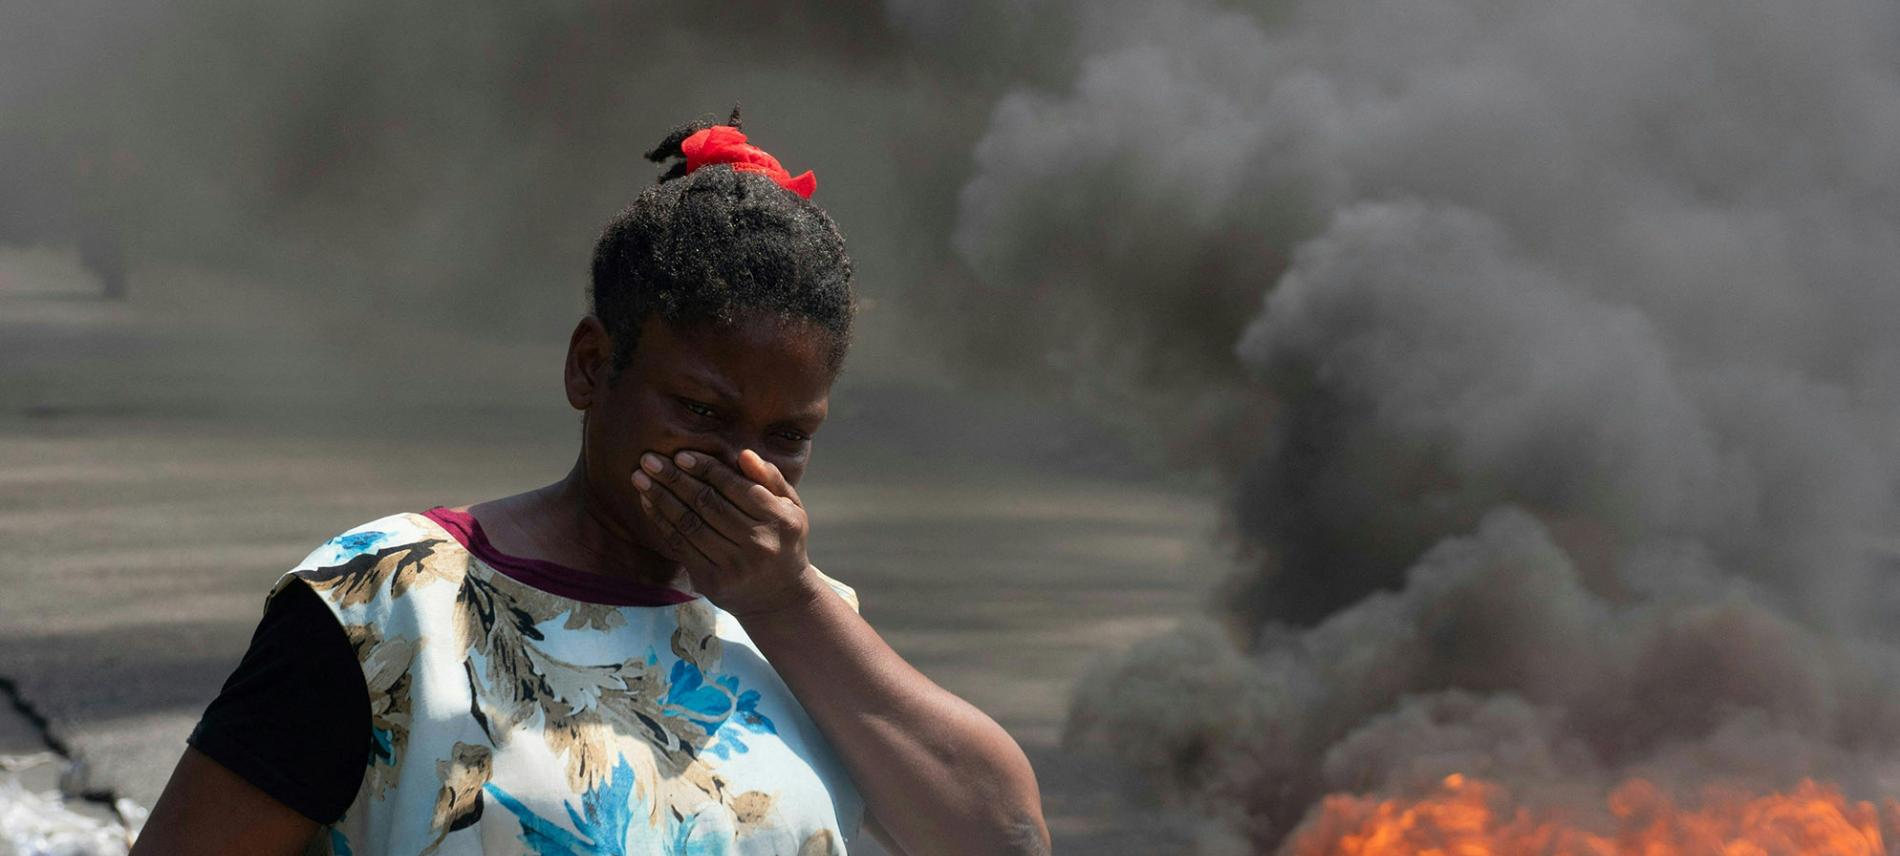 Die Gewalt in Haiti eskaliert immer mehr und erschwert humanitäre Hilfe. Foto: Clarens Siffroy/AFP